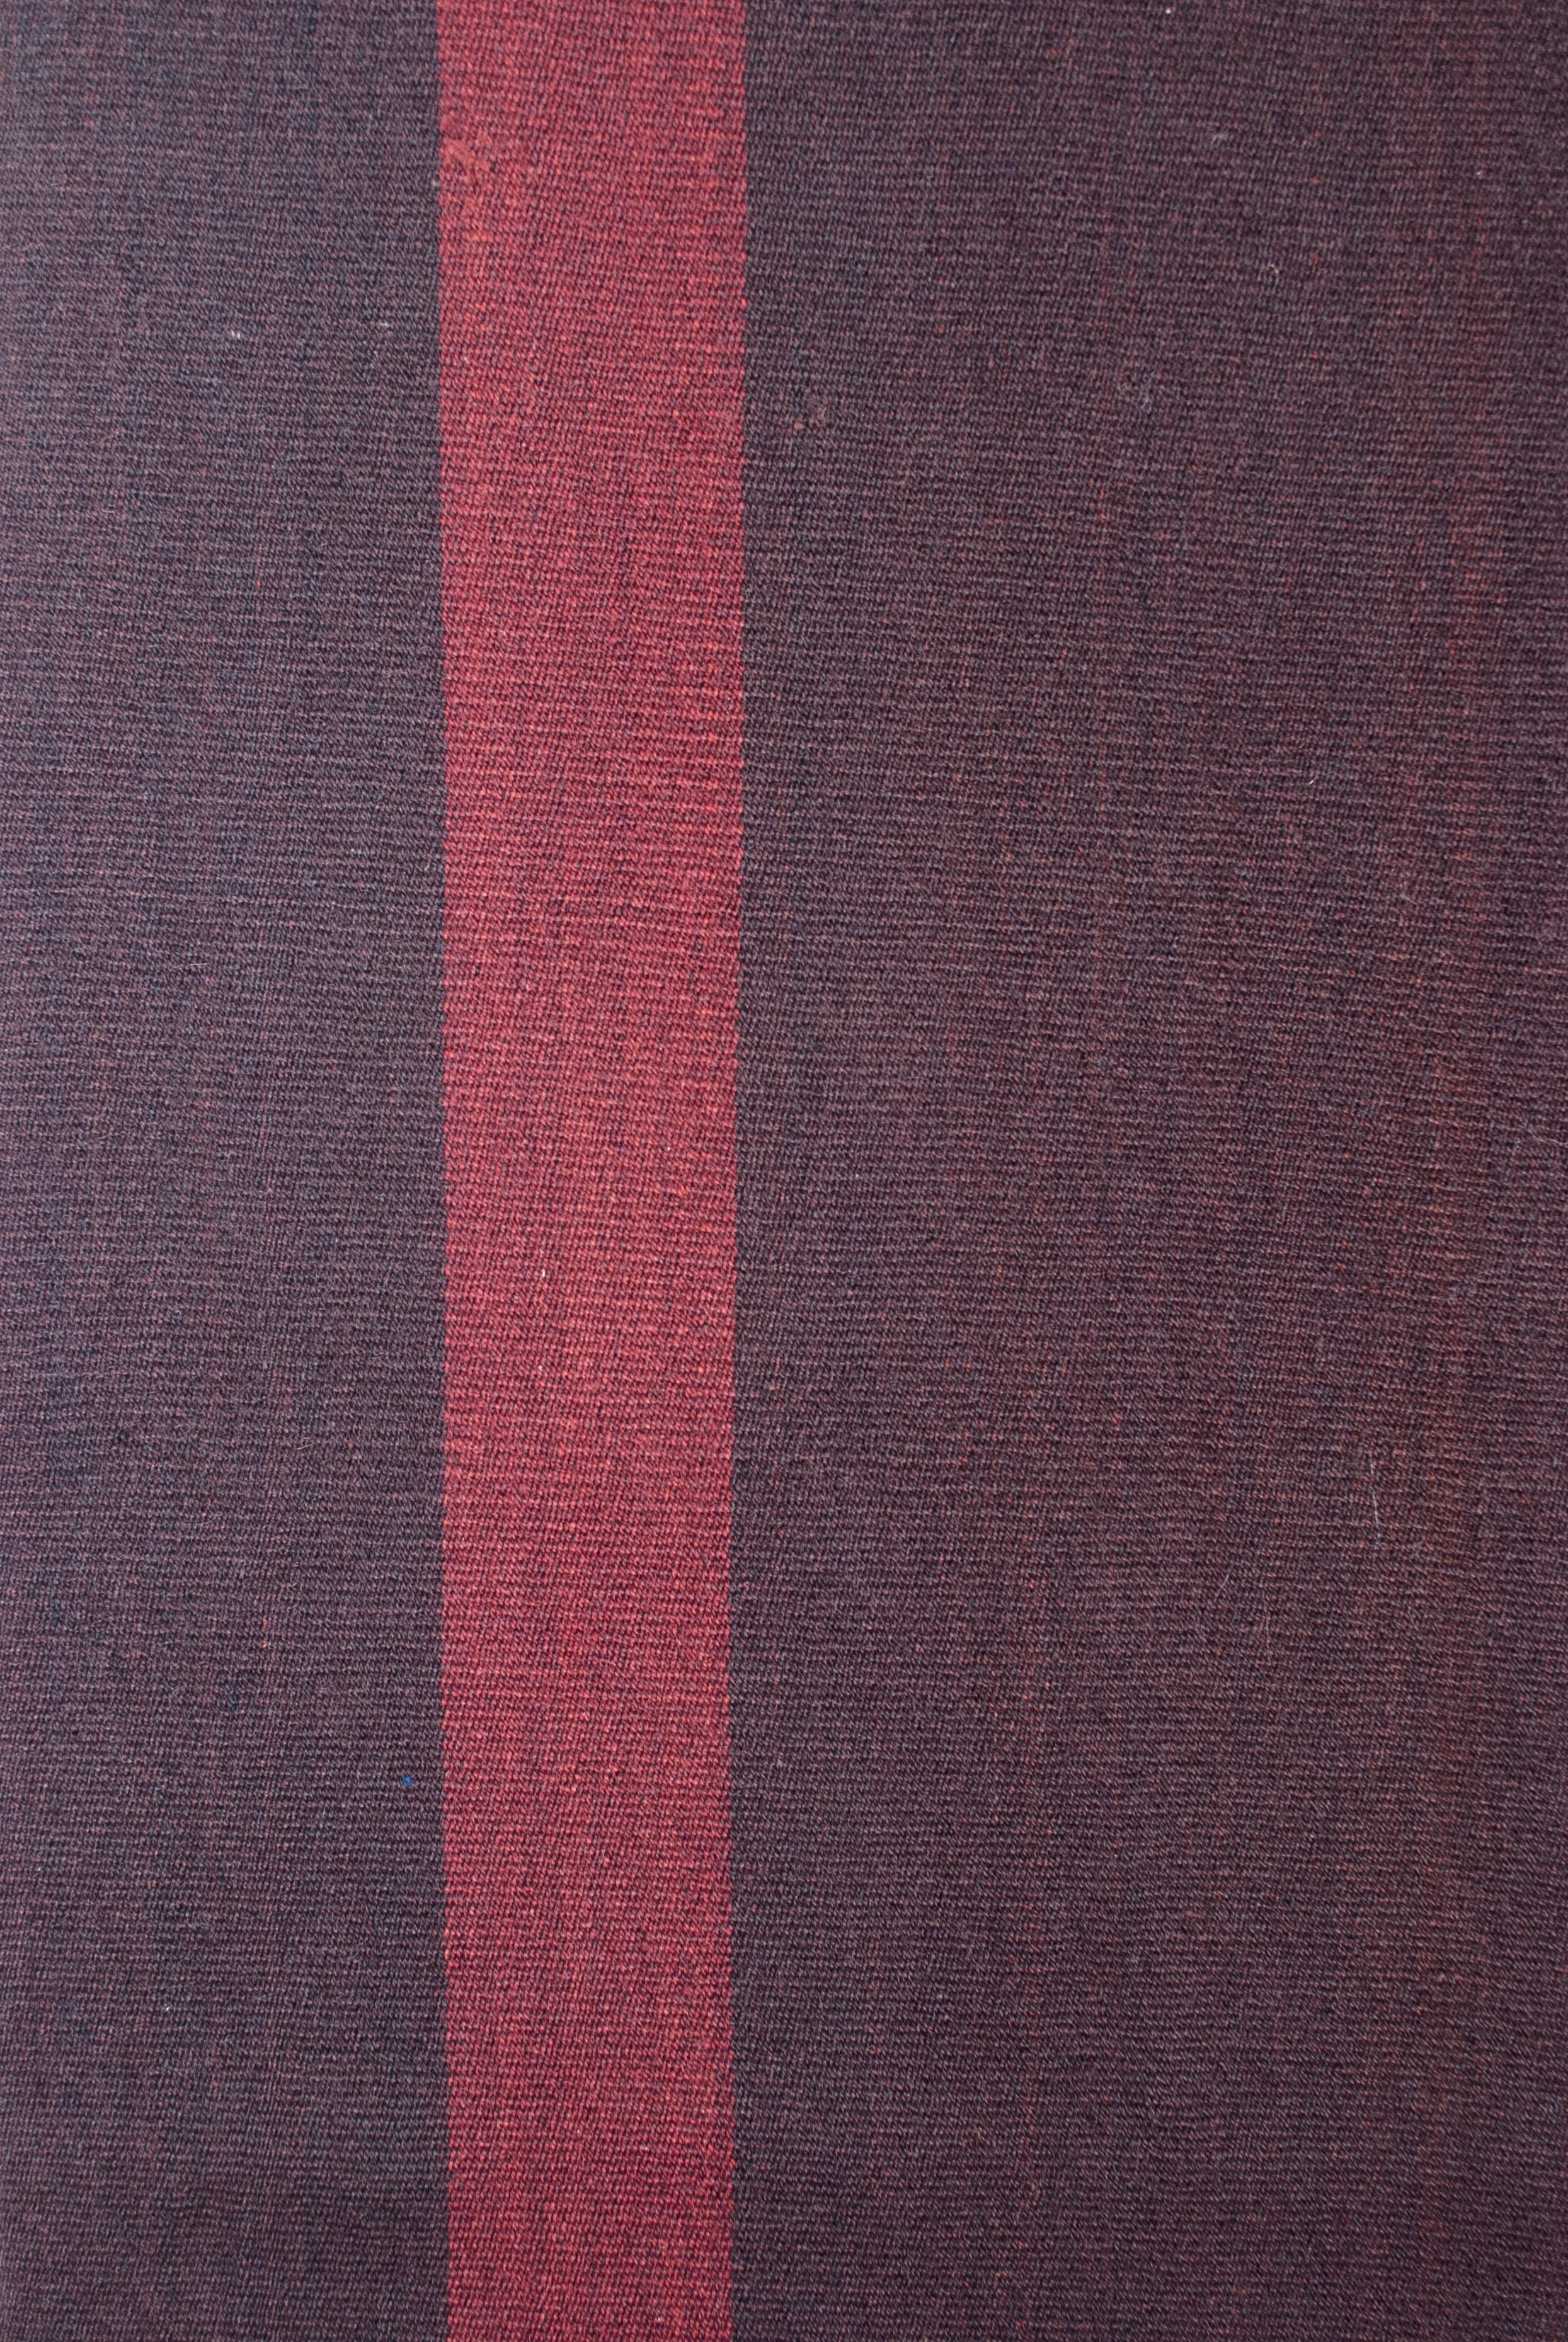 Poncho en laine d'alpaga bolivien datant d'environ 1900

Tissé en laine d'alpaga et teint avec des colorants naturels, ce petit poncho des hauts plateaux de Bolivie est orné de deux larges rayures simples dans le sens de la